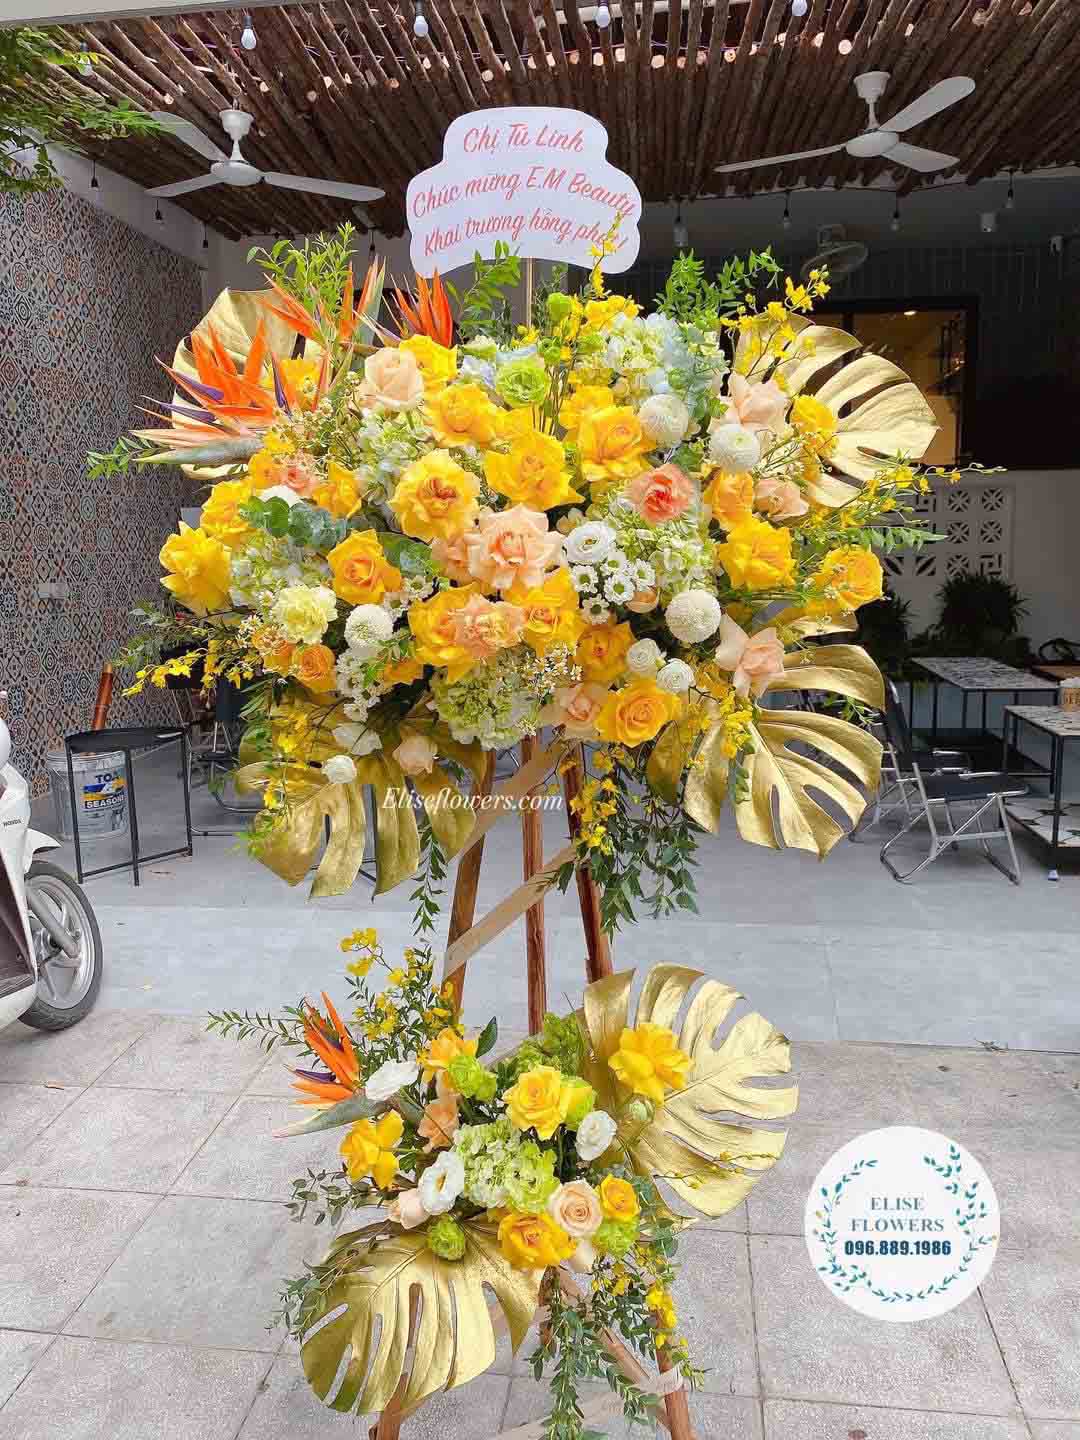 Hình ảnh kệ hoa chúc mừng khai trương màu vàng tài lộc | Kệ hoa 2 tầng chúc mừng khai trương | Hoa khai trương đẹp tại Eliseflowers